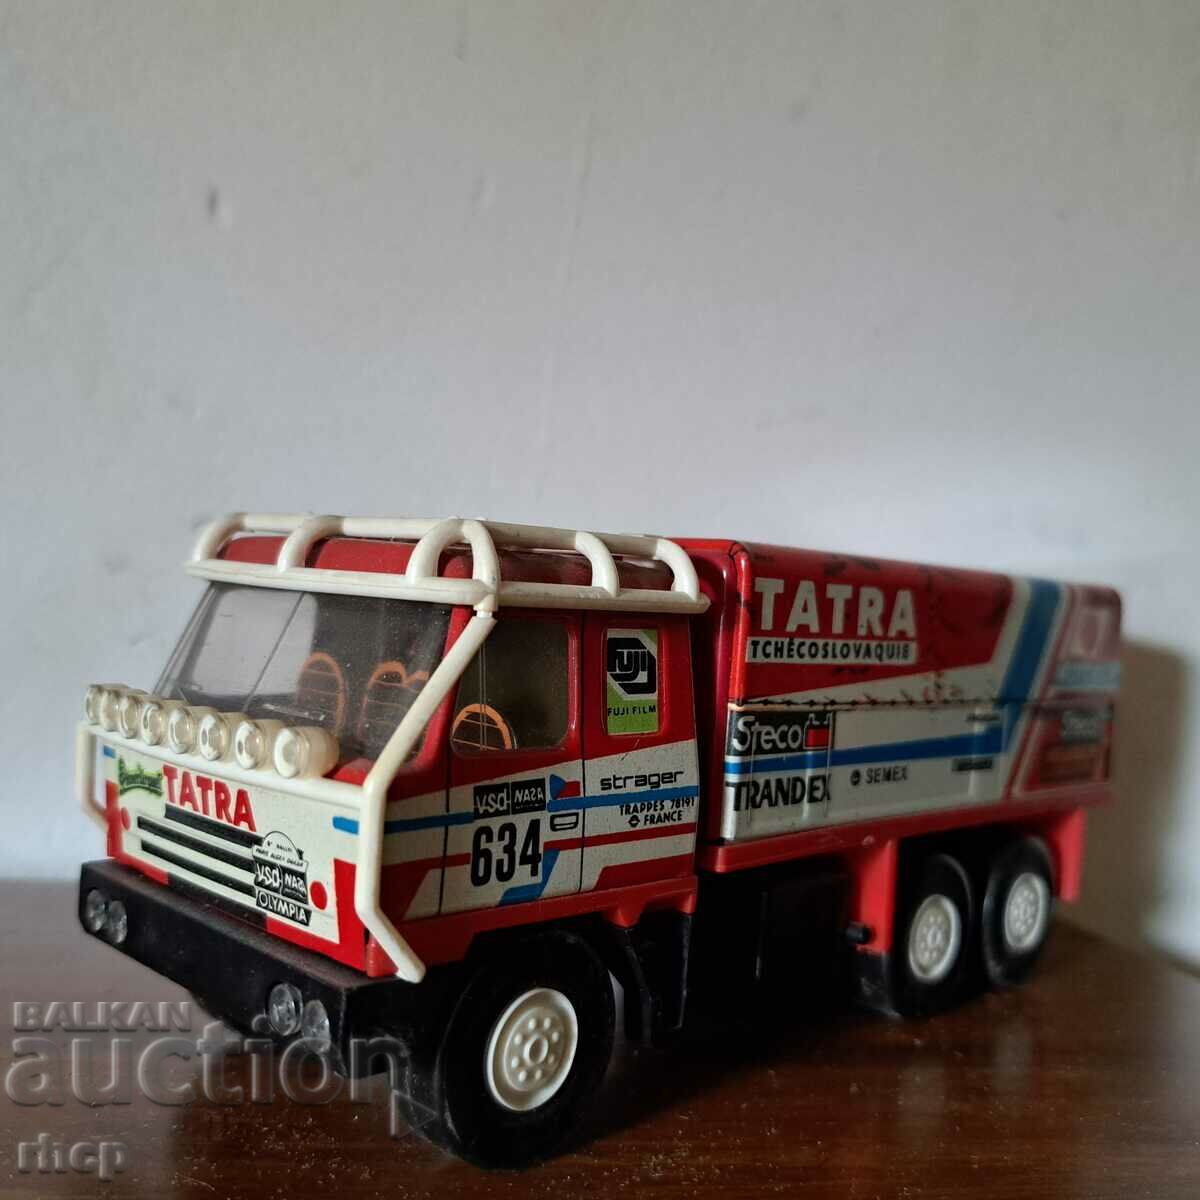 Tatra 815 rally truck old toy Czechoslovakia 1:43